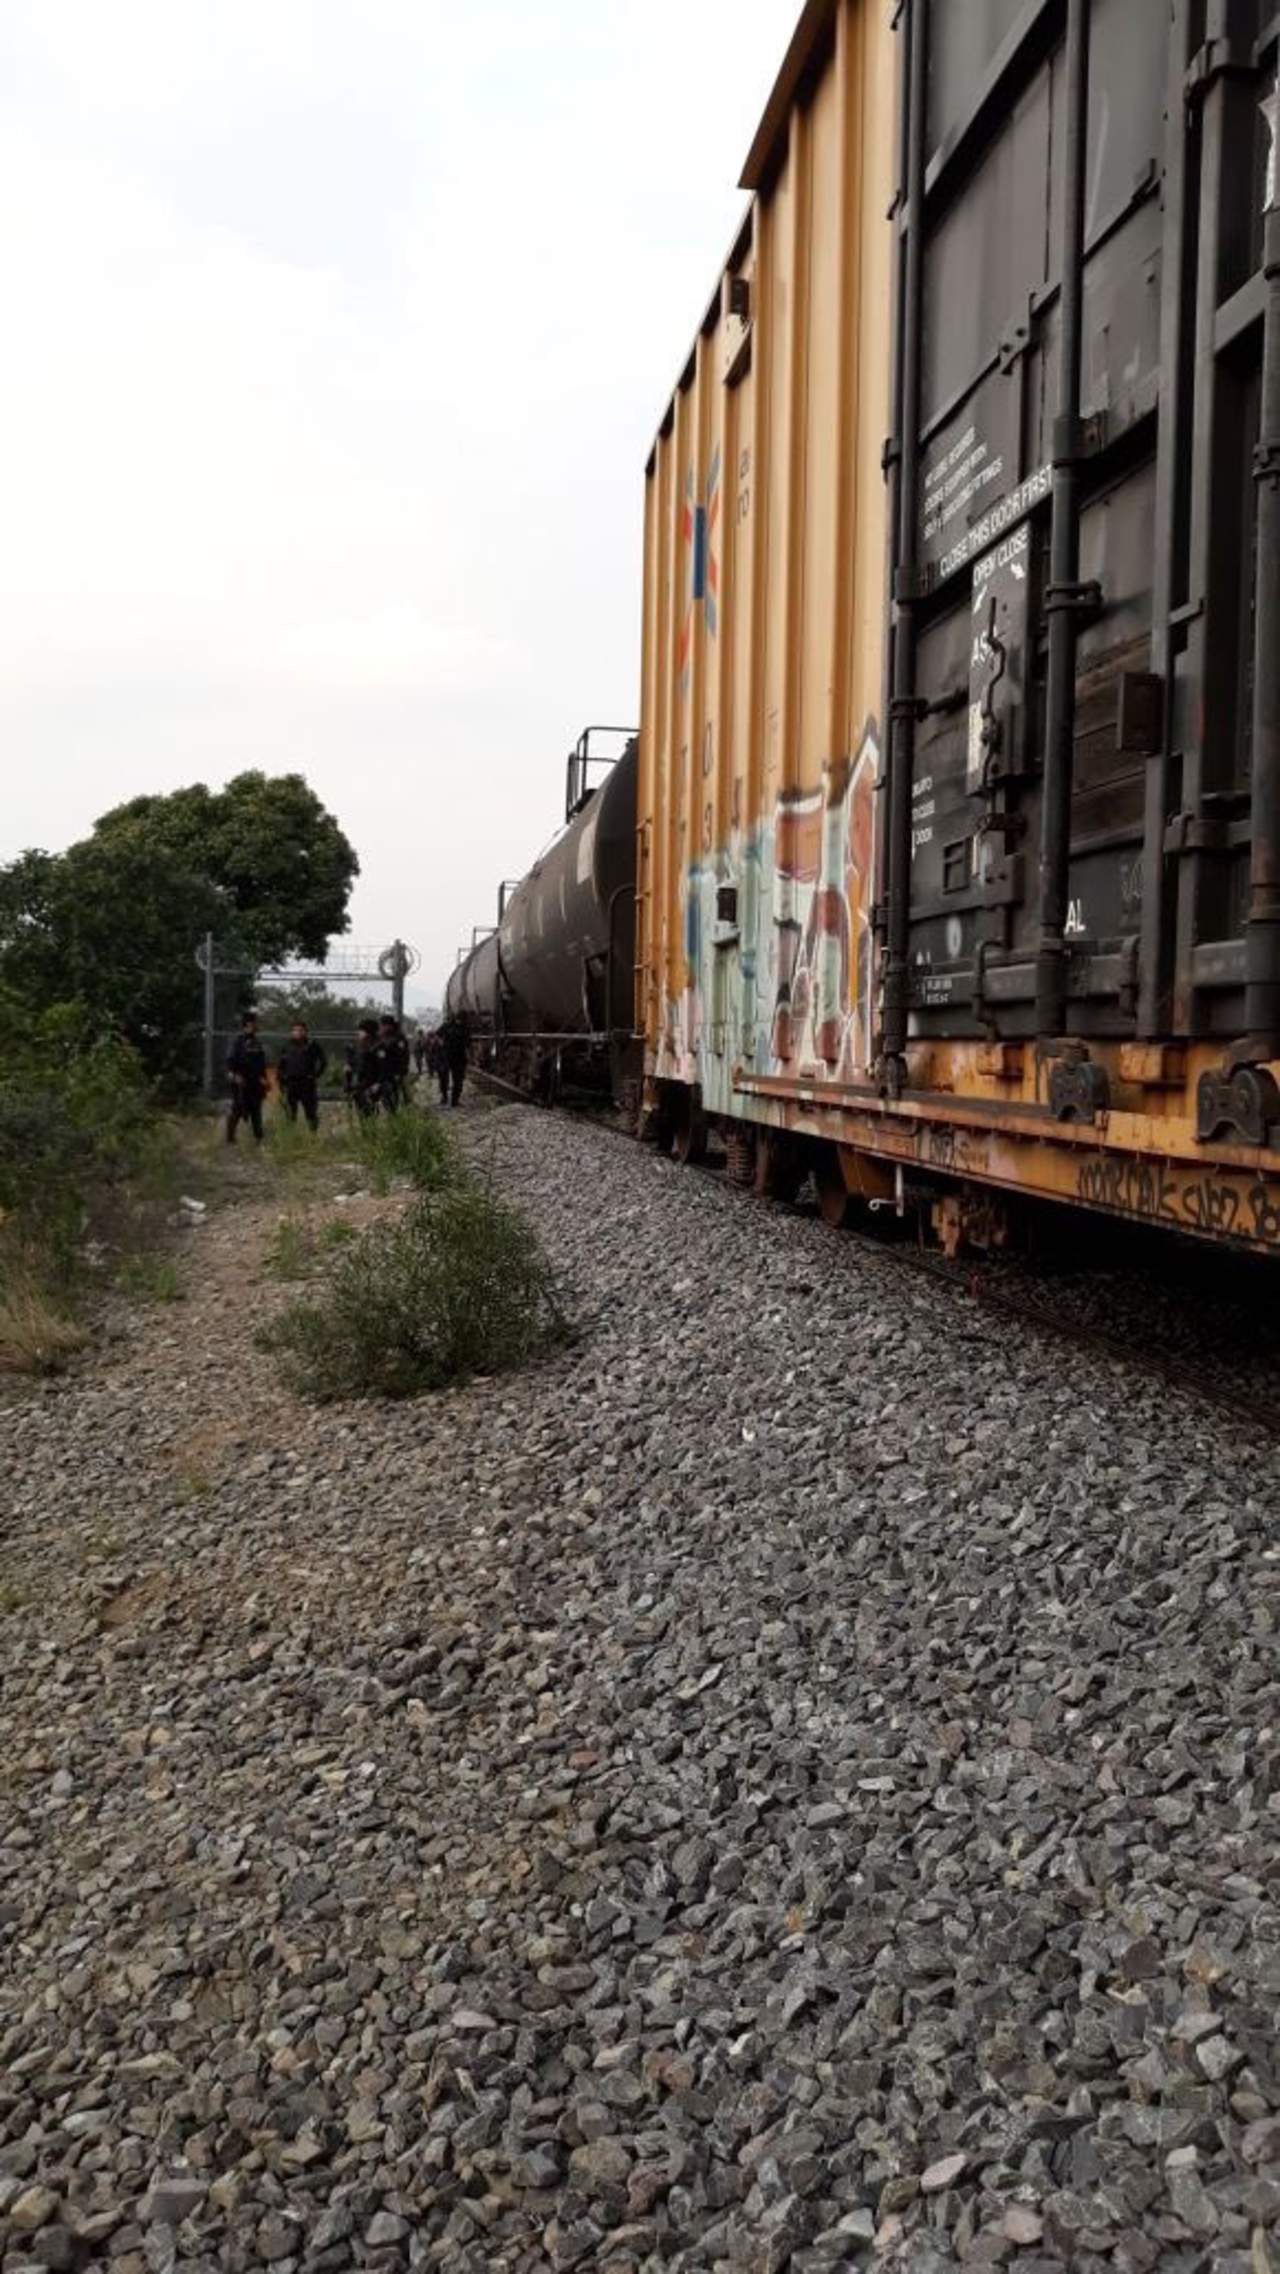 En lo que va del año se han registrado mil 986 denuncias por ataques a trenes y vías férreas en el país, un promedio de 14 al día, alerta Lourdes Aranda, directora de Comunicación de Ferromex. (TWITTER)